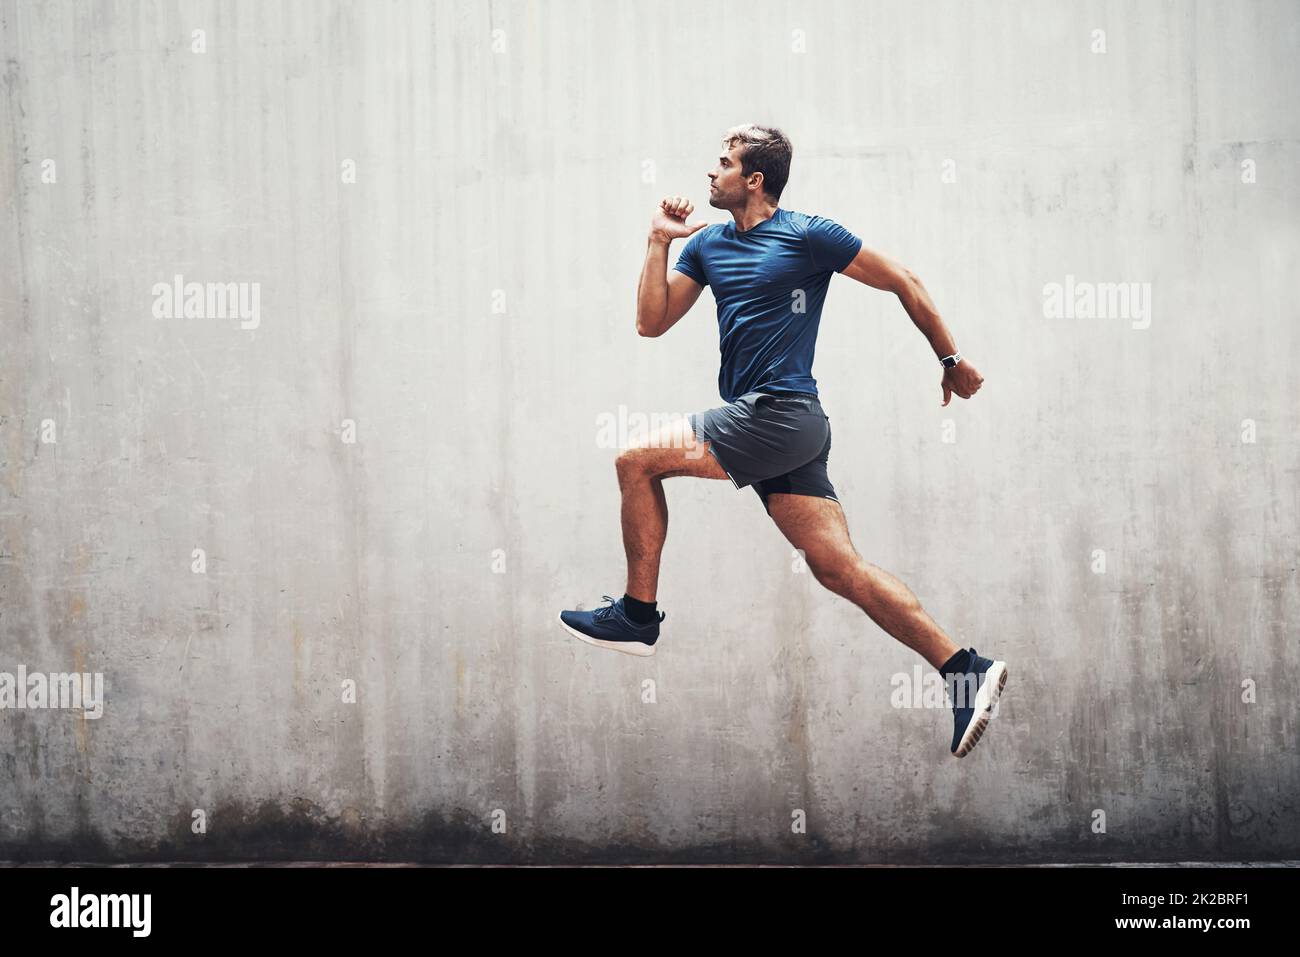 Gardez l'énergie. Photo d'un jeune sportif qui court contre un mur gris à l'extérieur. Banque D'Images